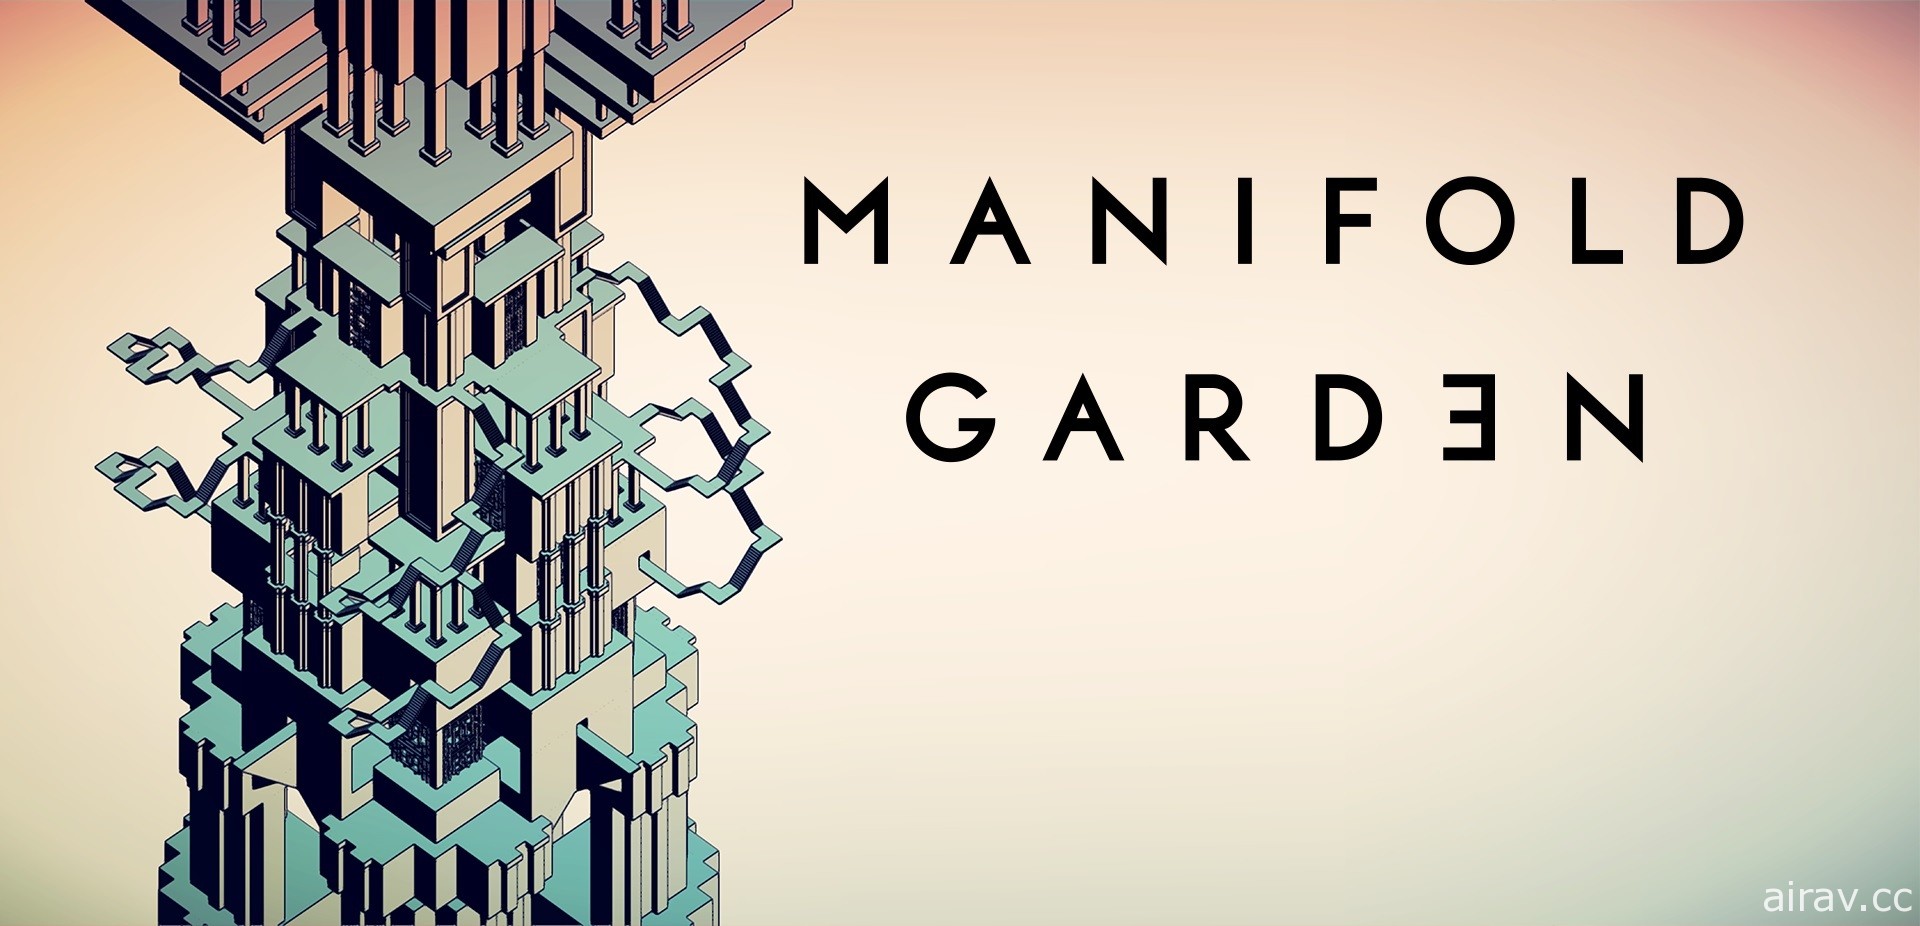 解谜游戏《多重花园 Manifold Garden》PS5 版加入主机版同步发售阵容